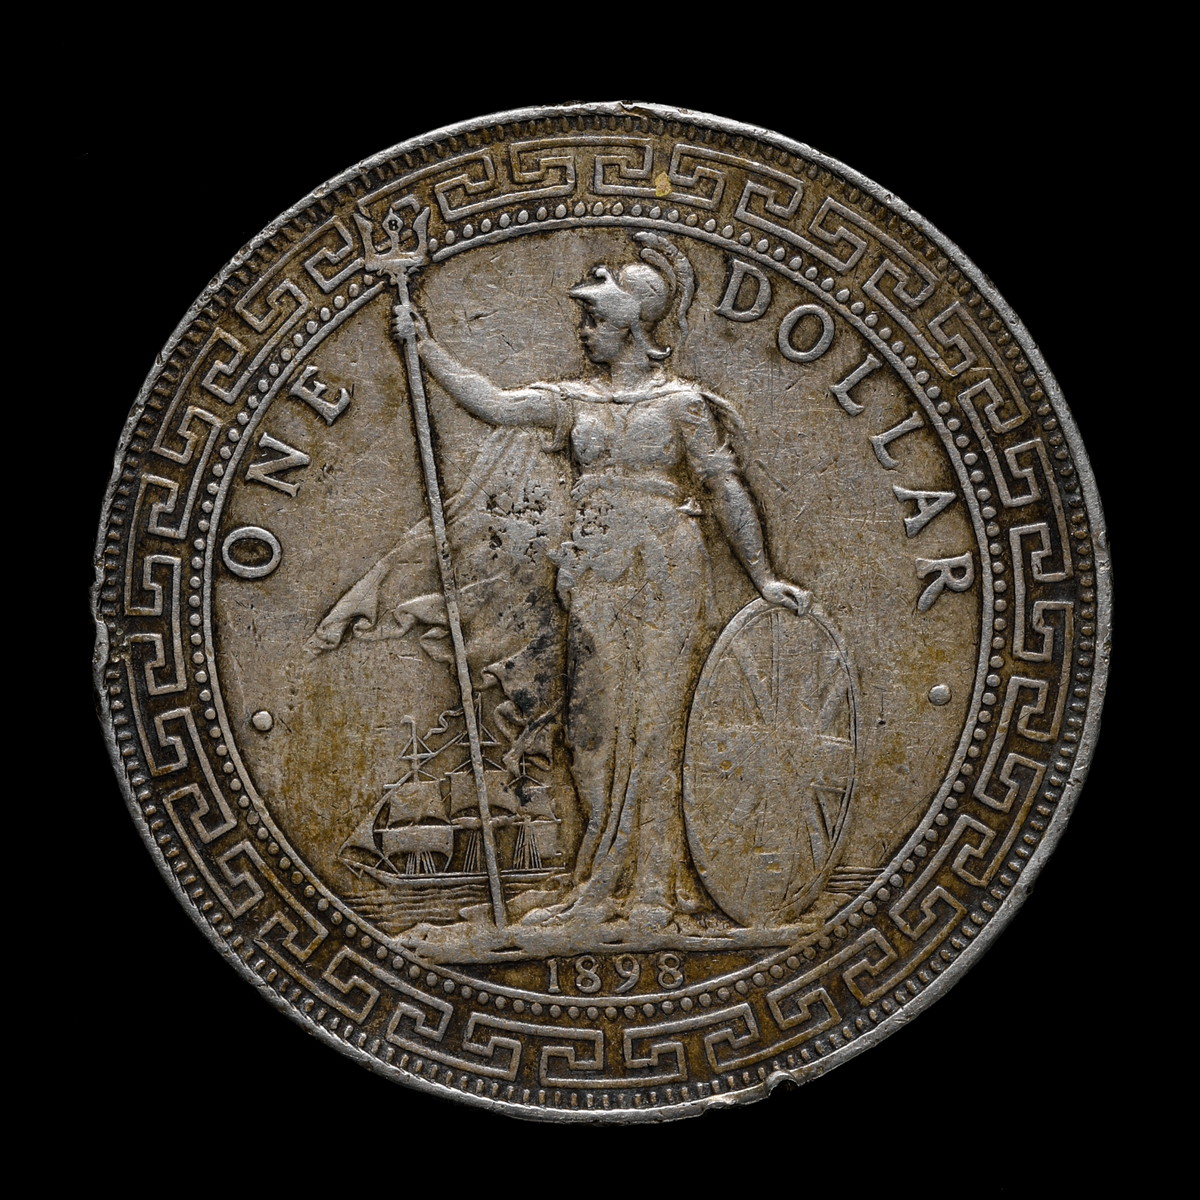 イギリス貿易銀 壹圓銀貨 1898年銘貿易銀 - コレクション